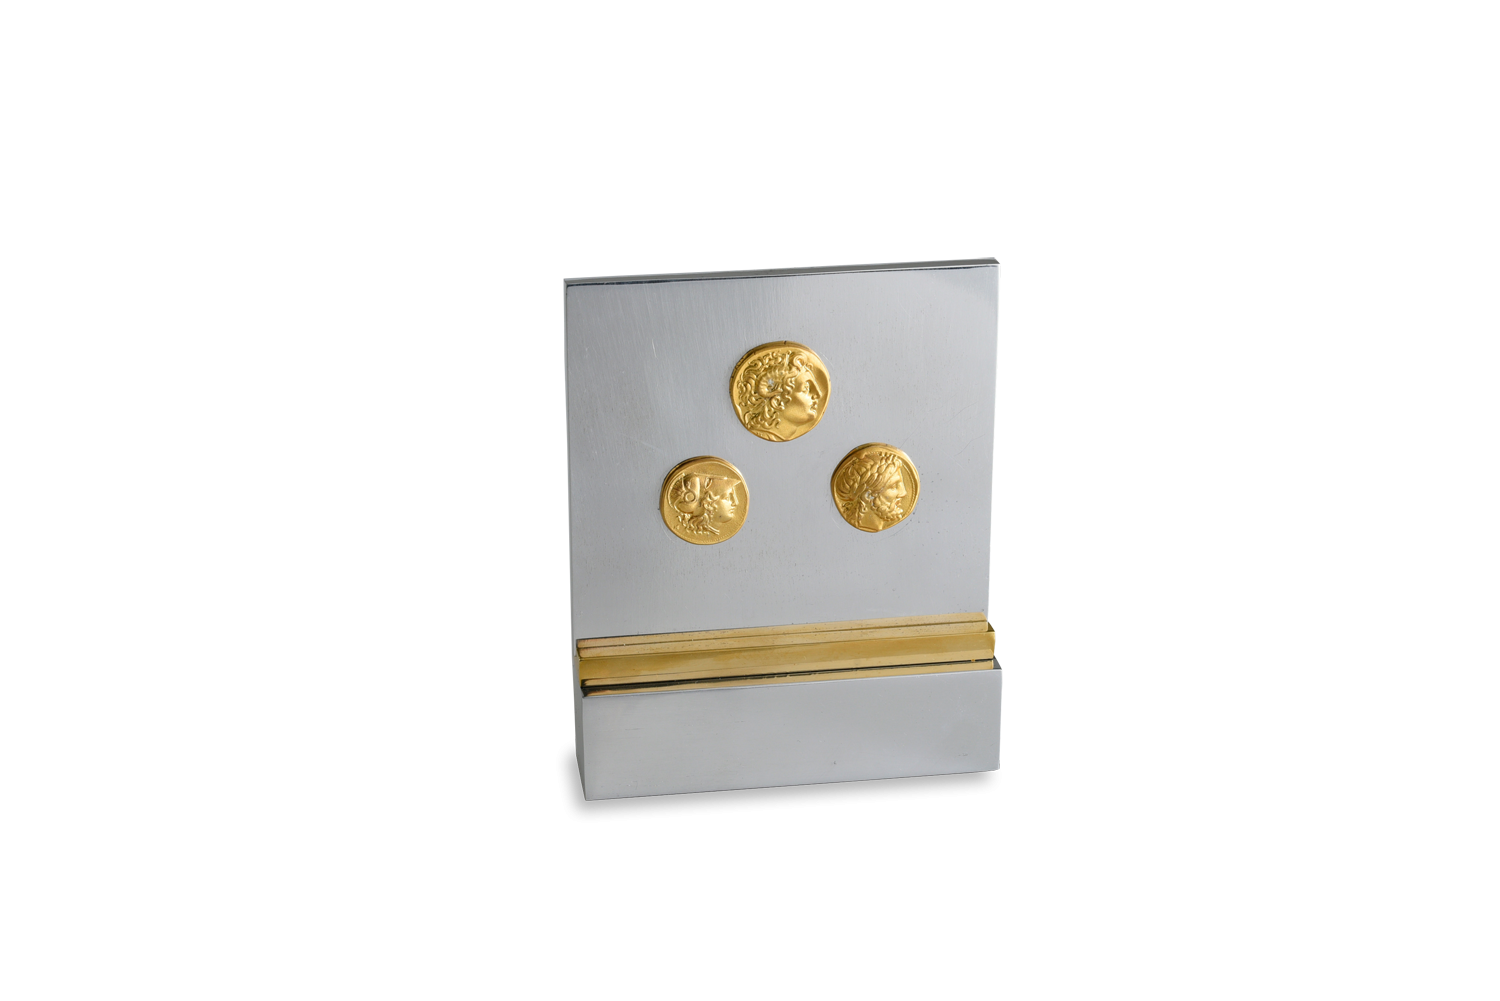 Αναμνηστική πλακέτα διακοσμητική, σταντ σε αλουμίνιο με μπρούντζινη λωρίδα και Νομίσματα ασήμι 925° επίχρυσα Μακεδονικής Δυναστείας, με κεφαλές Μ.Αλεξάνδρου, Αθηνάς και Διός.